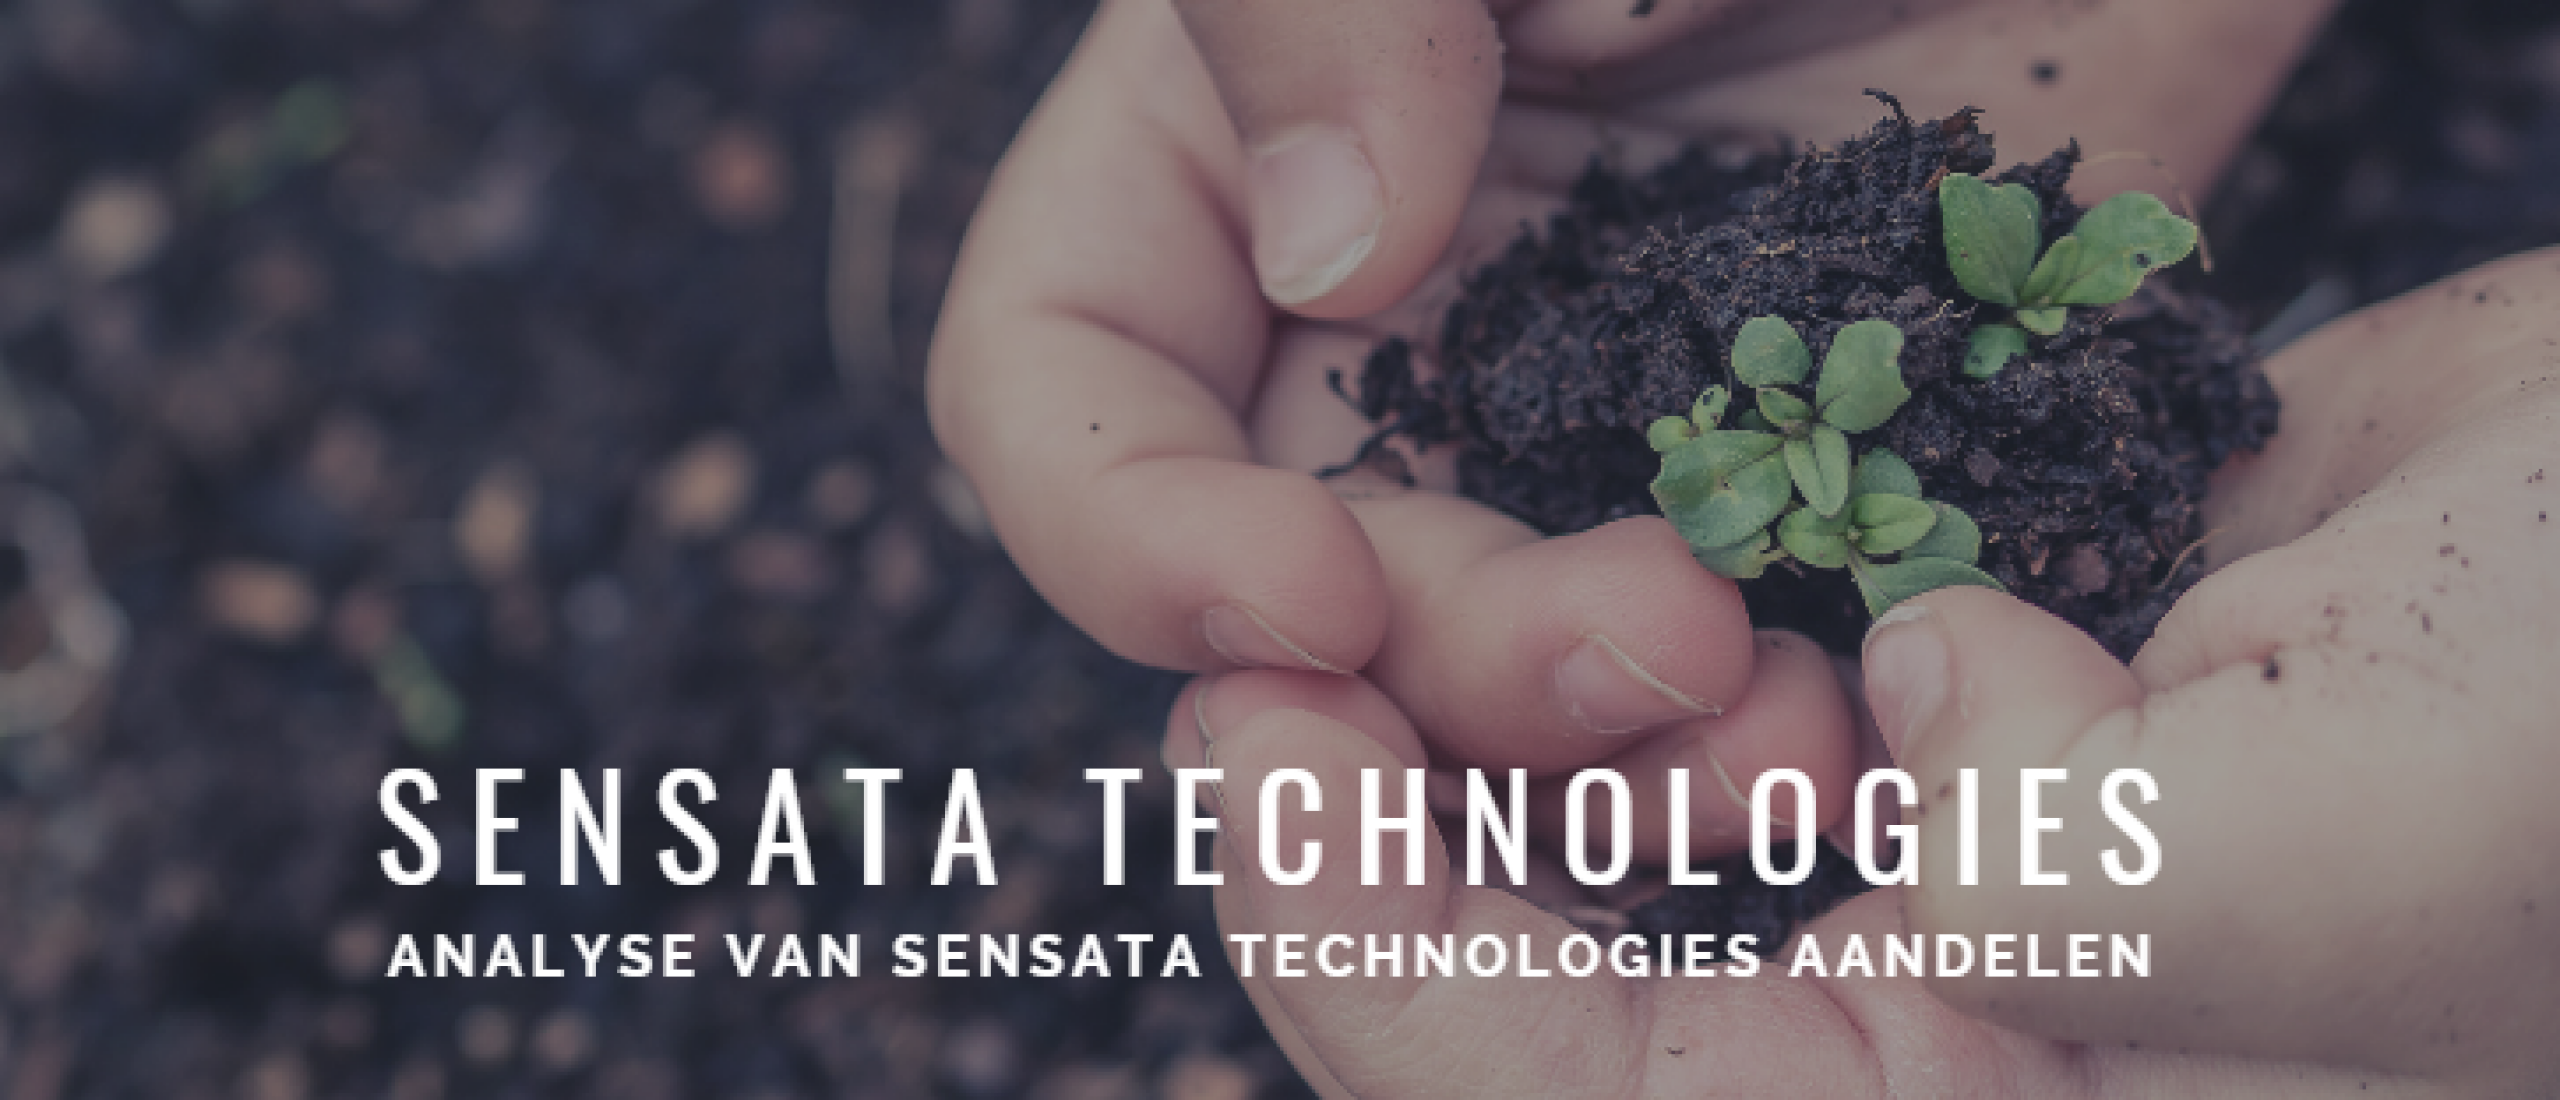 Sensata Technologies aandelen kopen? Analyse +31% groei | Happy Investors